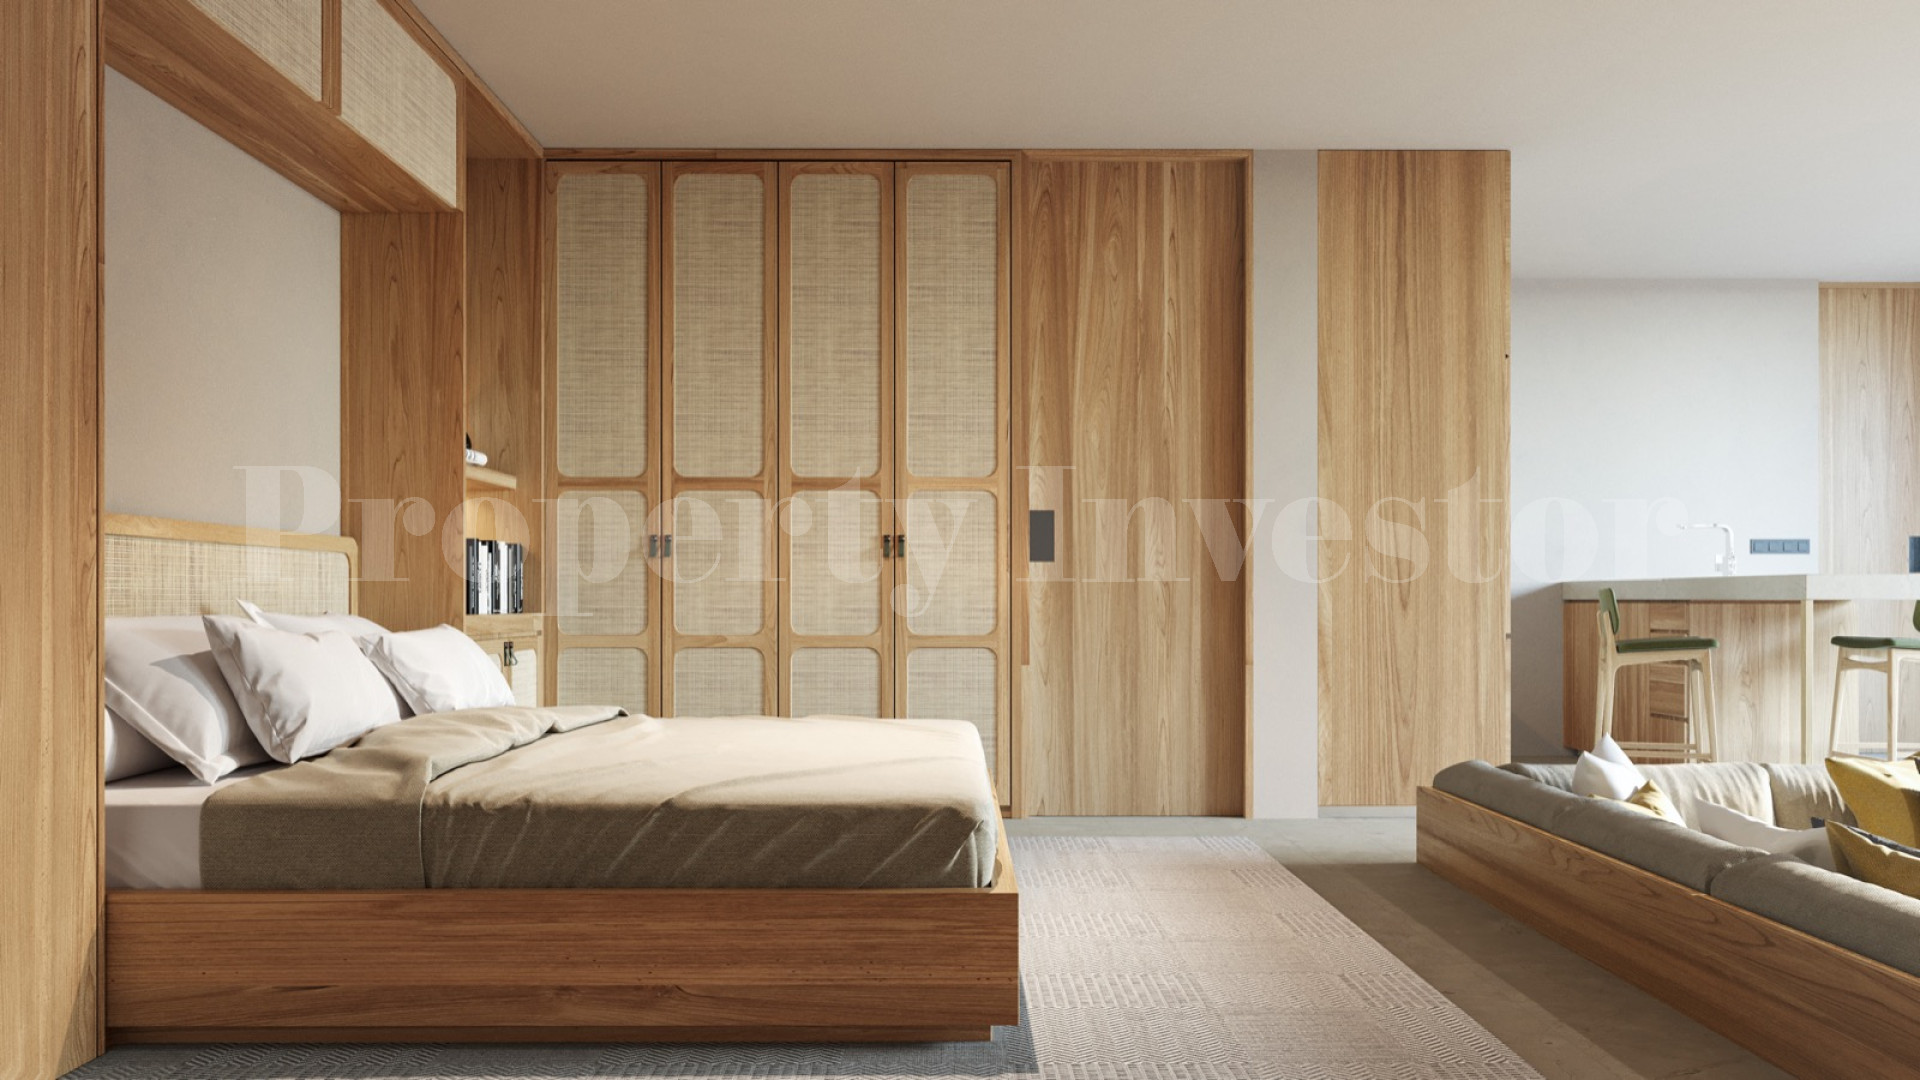 Продаётся современная роскошная дизайнерская вилла на 2 спальни с видом на океан под строительство в Улувату на Бали